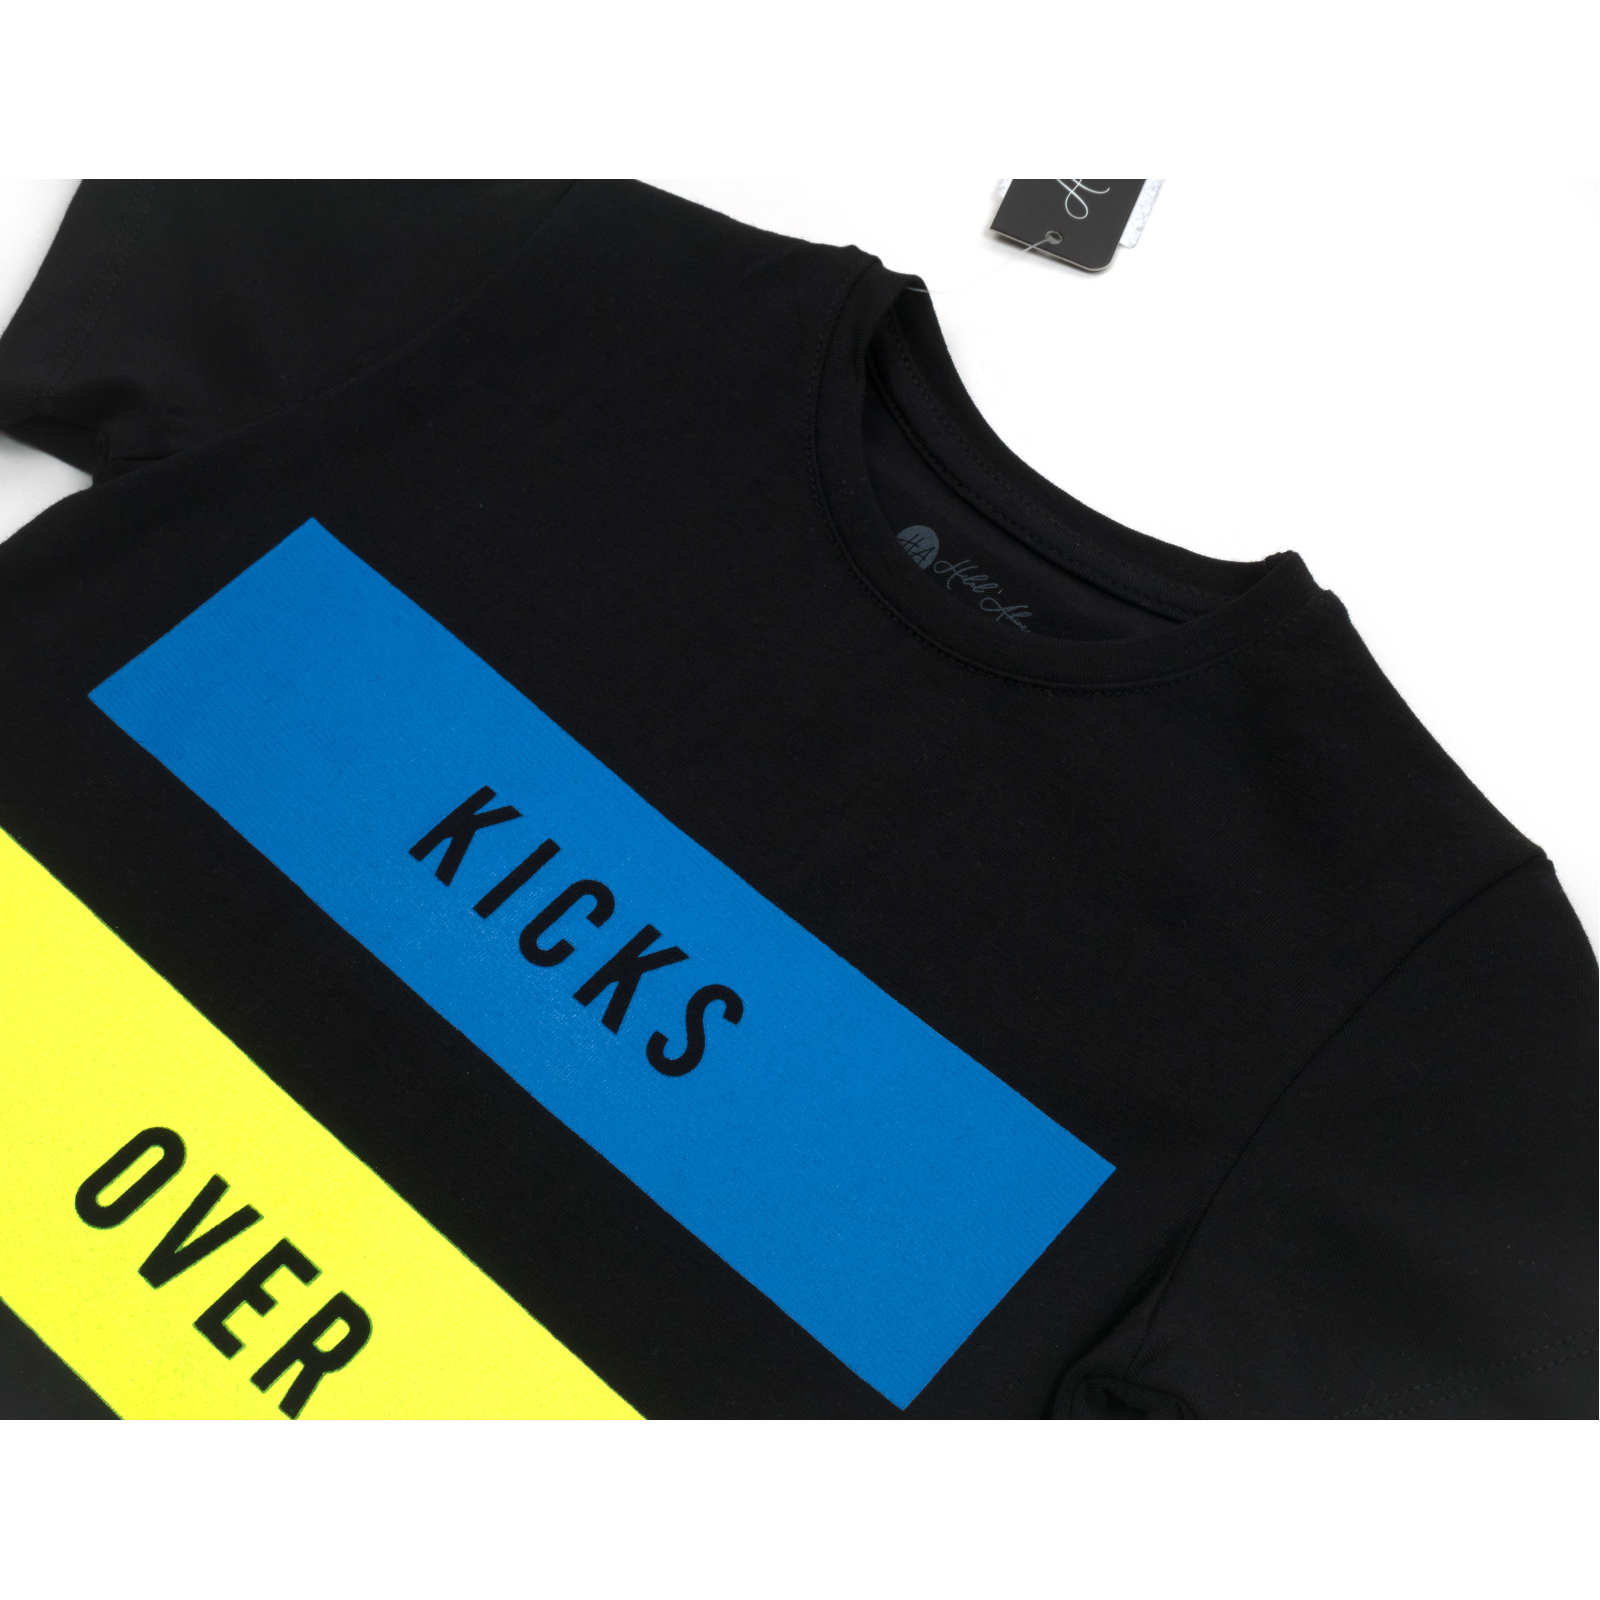 Набор детской одежды H.A футболка с бриджами (M-120-98B-black) изображение 7